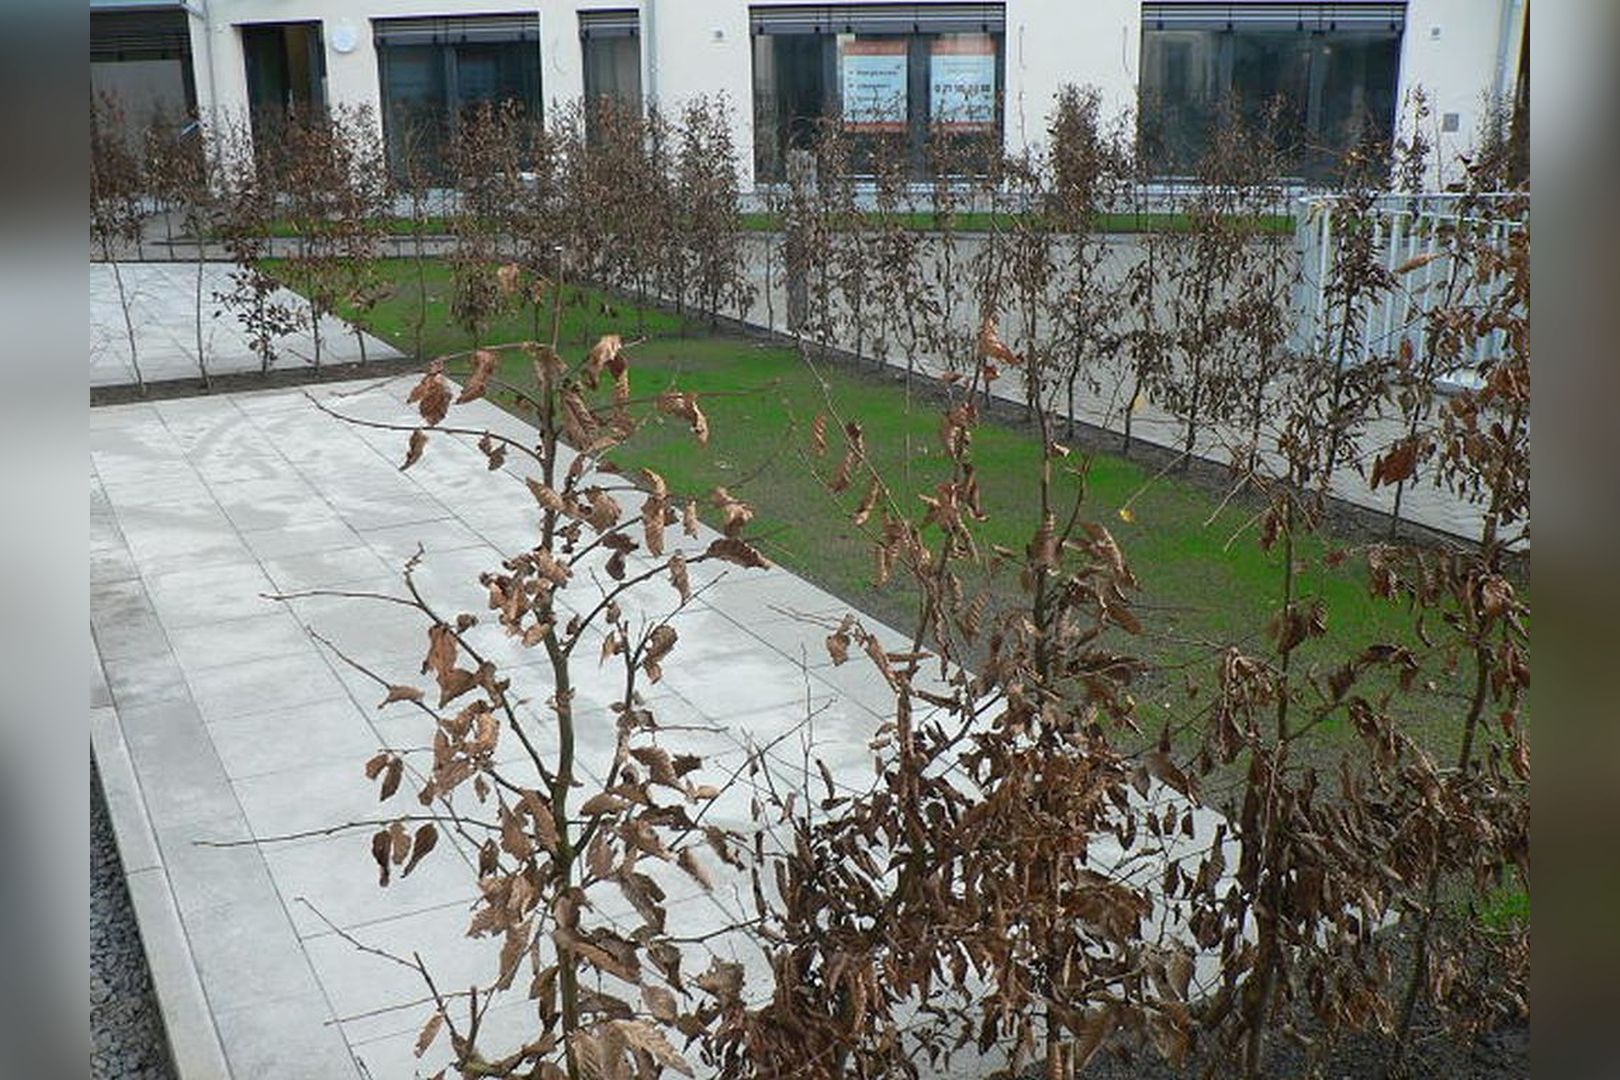 Immobilie Nr.Hilden 002 - 3-Raum-Maisonette mit Gartenterrasse als Innovation auf cleverer Erbbauliegenschaft der kath. Kirche - Bild 3.jpg